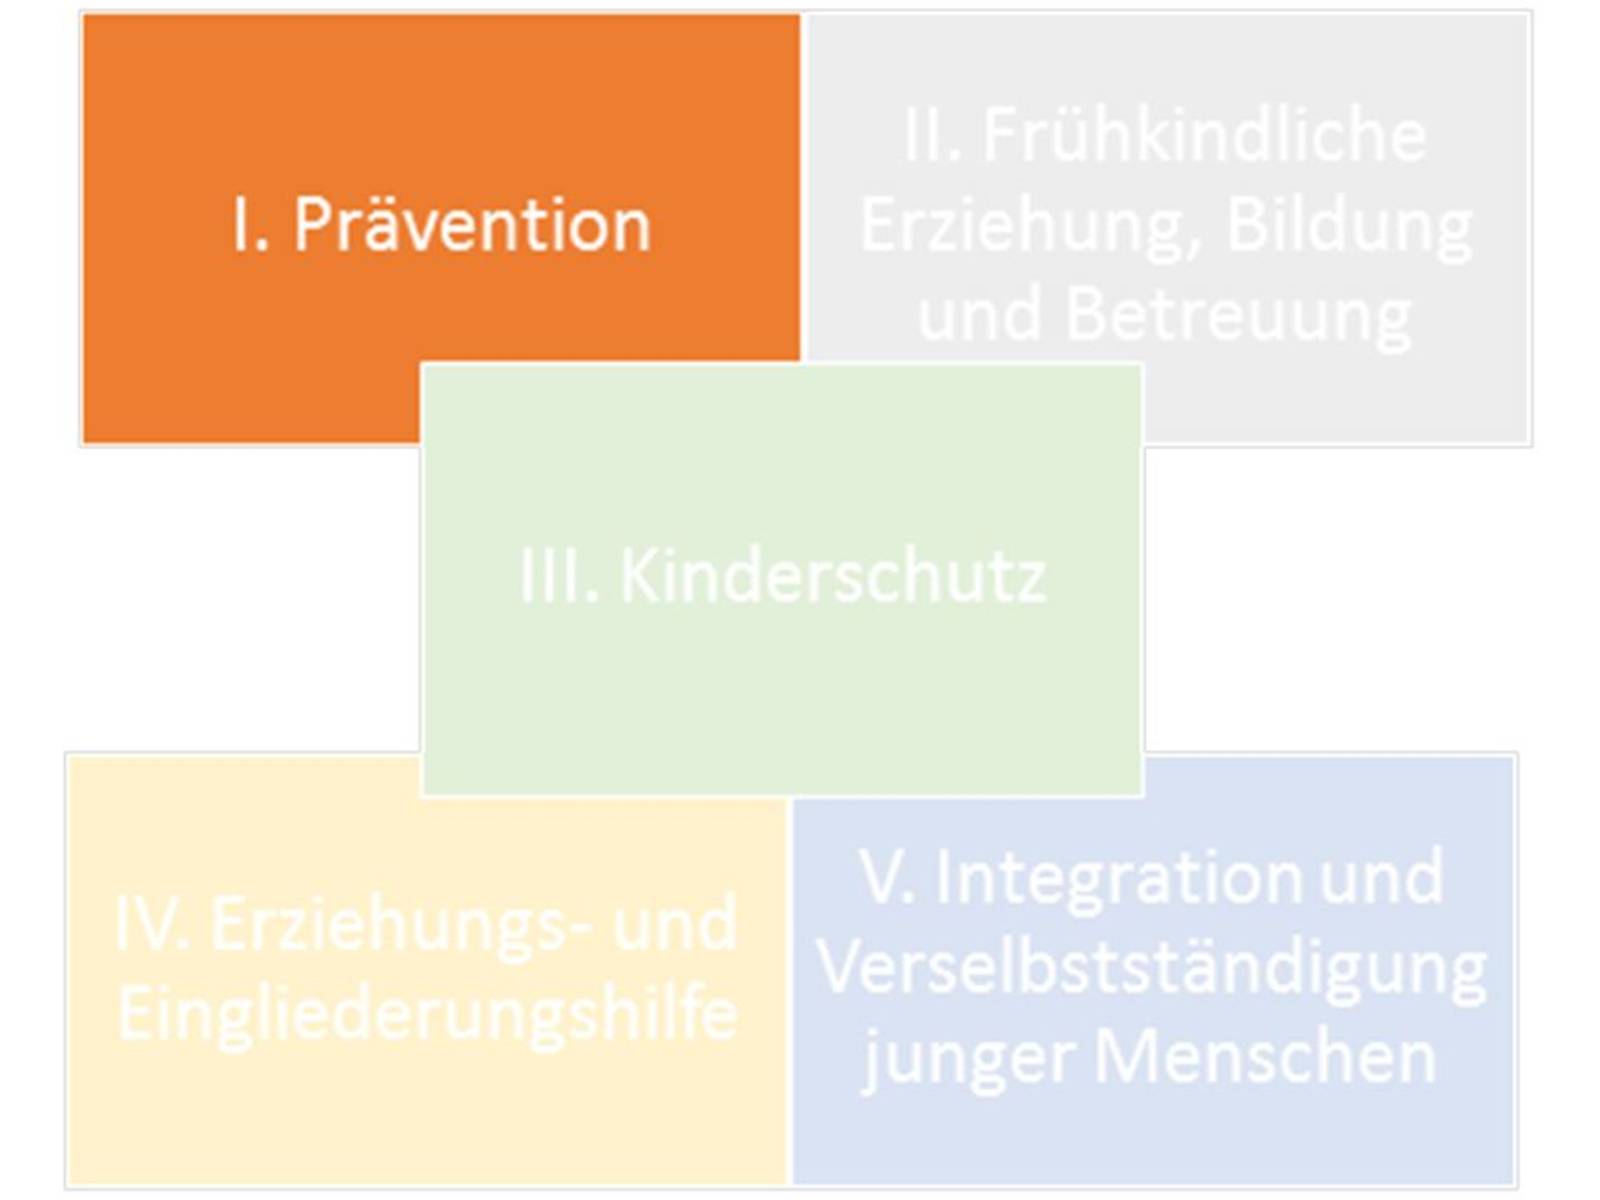 Fünf rechteckige Flächen sind mit jeweils einer anderen Farbe ausgefüllt und mit Text beschriftet. Von links oben nach rechts unten steht jeweils: "I. Prävention"; "II. Frühkindliche Erziehung, Bildung und Betreuung"; "III. Kinderschutz"; "IV. Erziehungs- und Eingliederungshilfe" und "V. Integration und Verselbständigung junger Menschen".